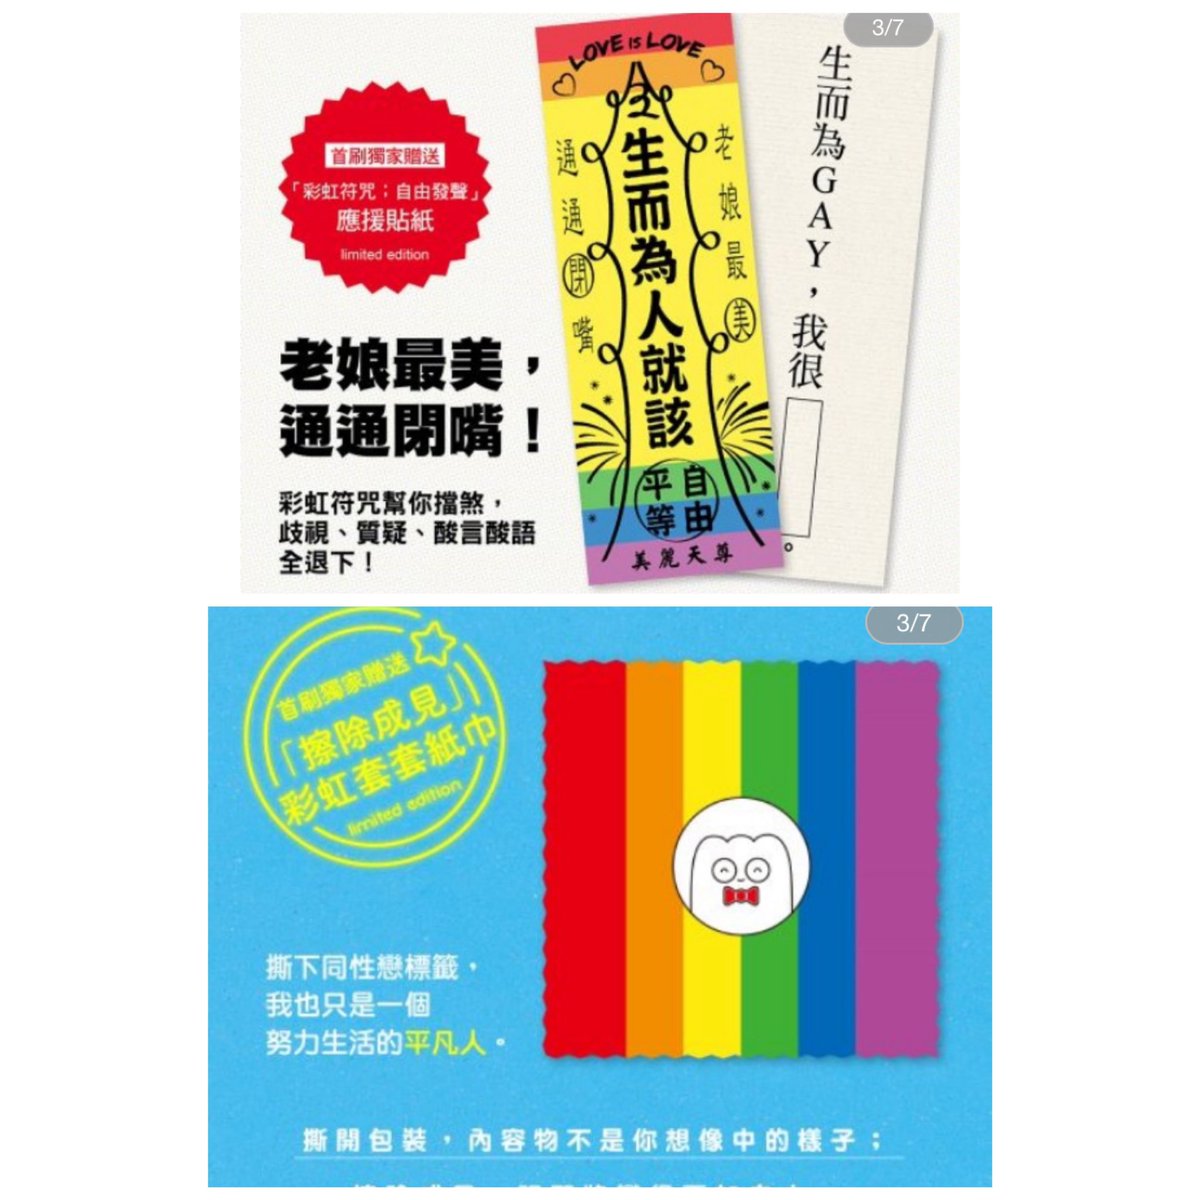 9月30日より尖端出版社さまから、KADOKAWA・講談社で上梓した拙作が翻訳出版されます?

謝謝?
例年、台湾では10月よりLGBTプライドのイベント(台灣同志遊行)がたくさん開催されます?

あたいもいつか参加してぇ……。 